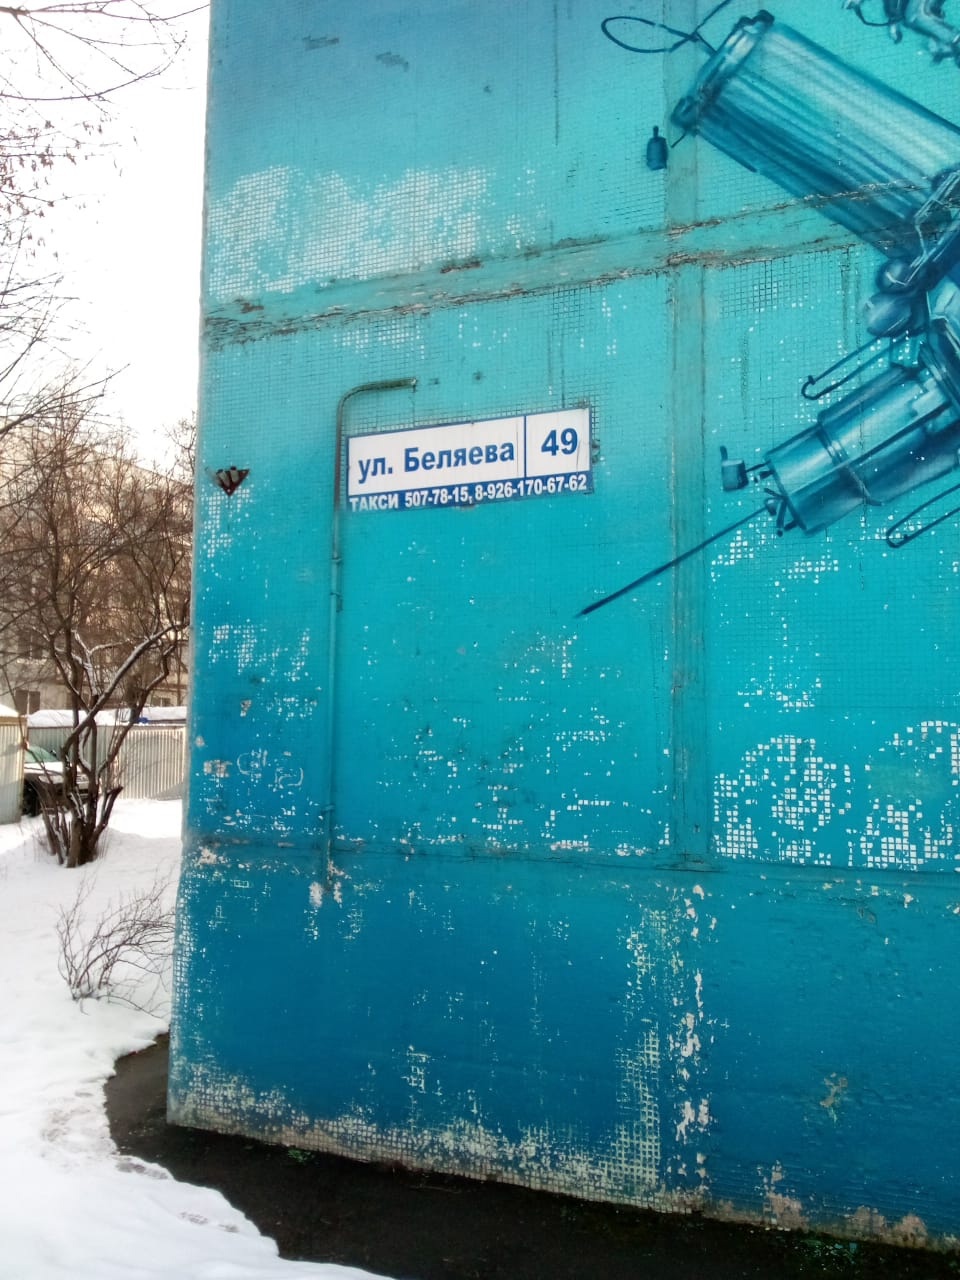 Специалисты Водоканала провели внеплановую промывку коллекторов в микрорайоне Бахчиванджи, ул. Беляева